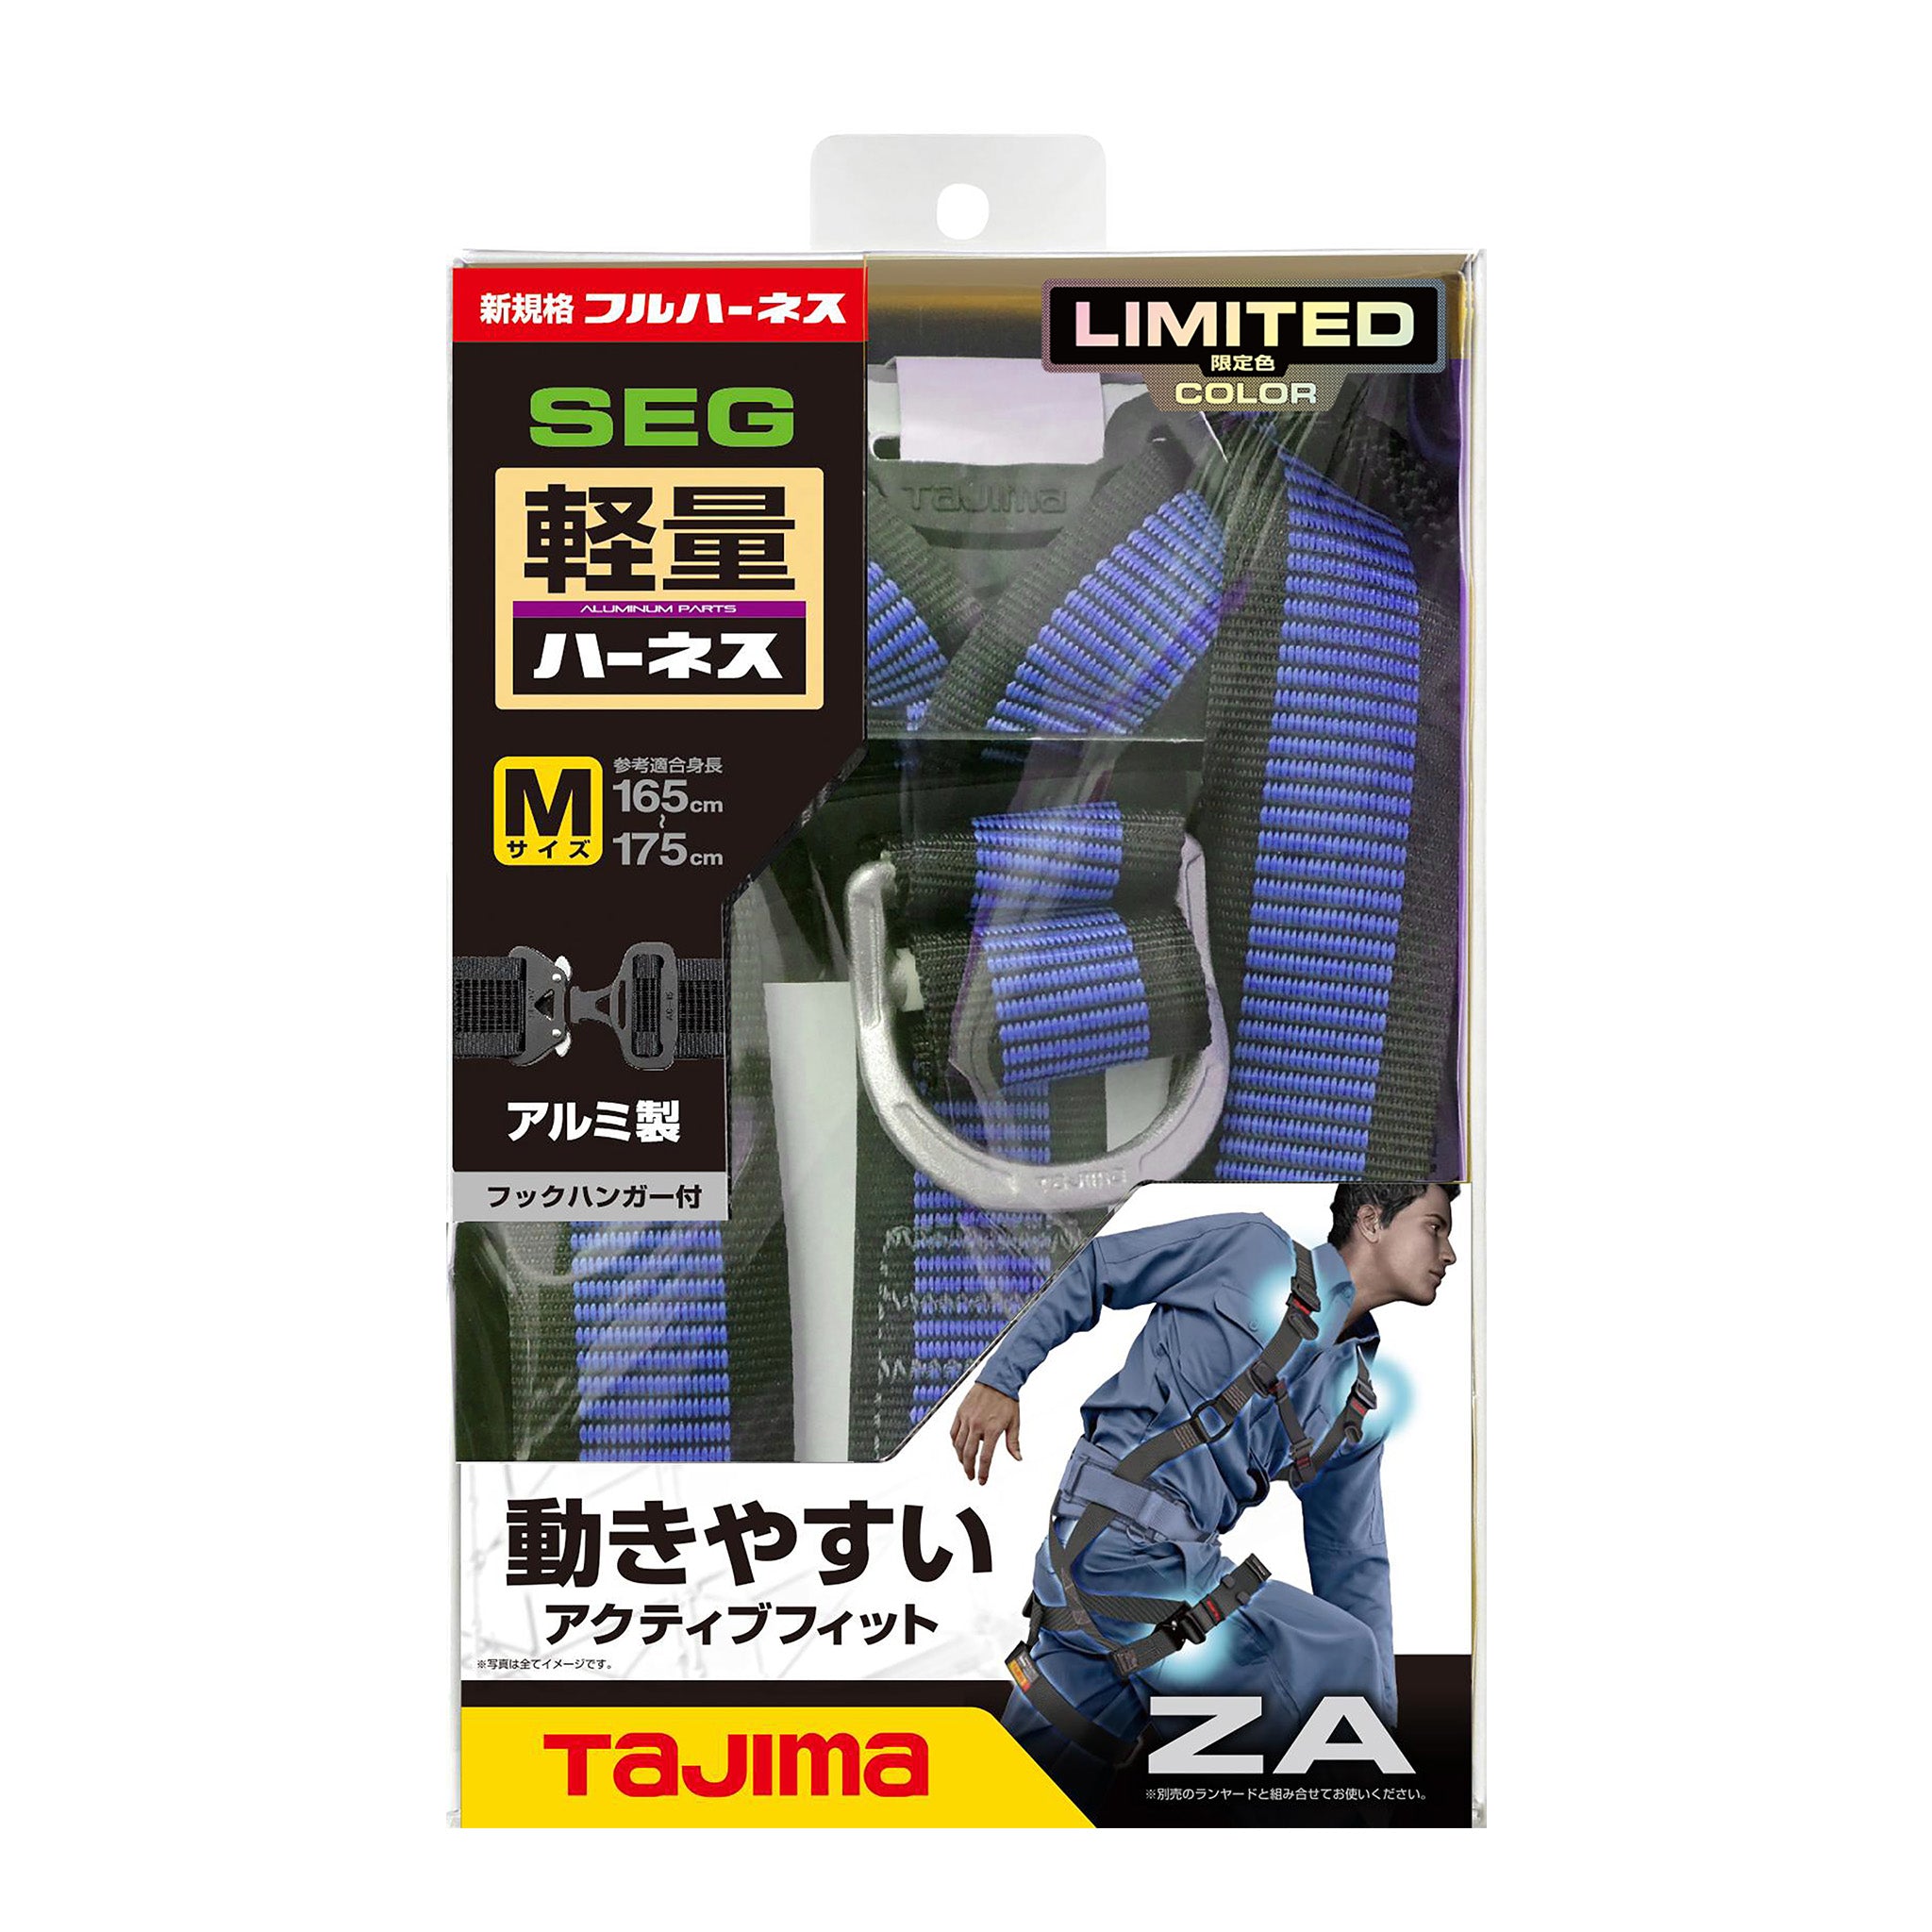 タジマ 新規格フルハーネス ZA 軽量アルミ・ワンタッチ腿バックルモデル 【限定色】